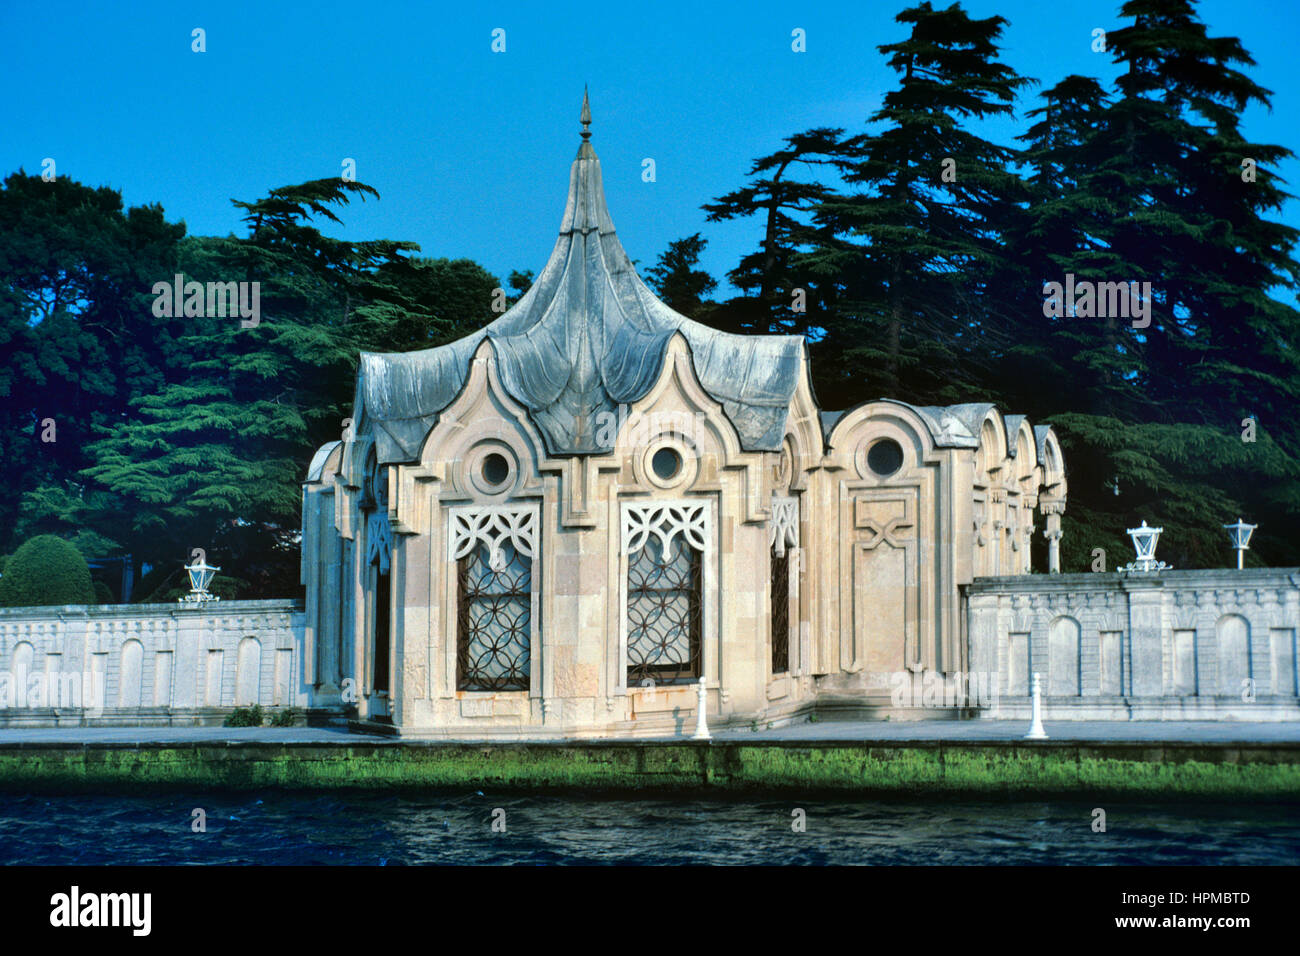 Barocke Gartenpavillon oder Kiosk auf dem Gelände der Waterfront Beylerbey oder Beylerbeyi-Palast (1961-65) am asiatischen Ufer des Bosporus oder Bosporus Meerenge-Istanbul-Türkei Stockfoto